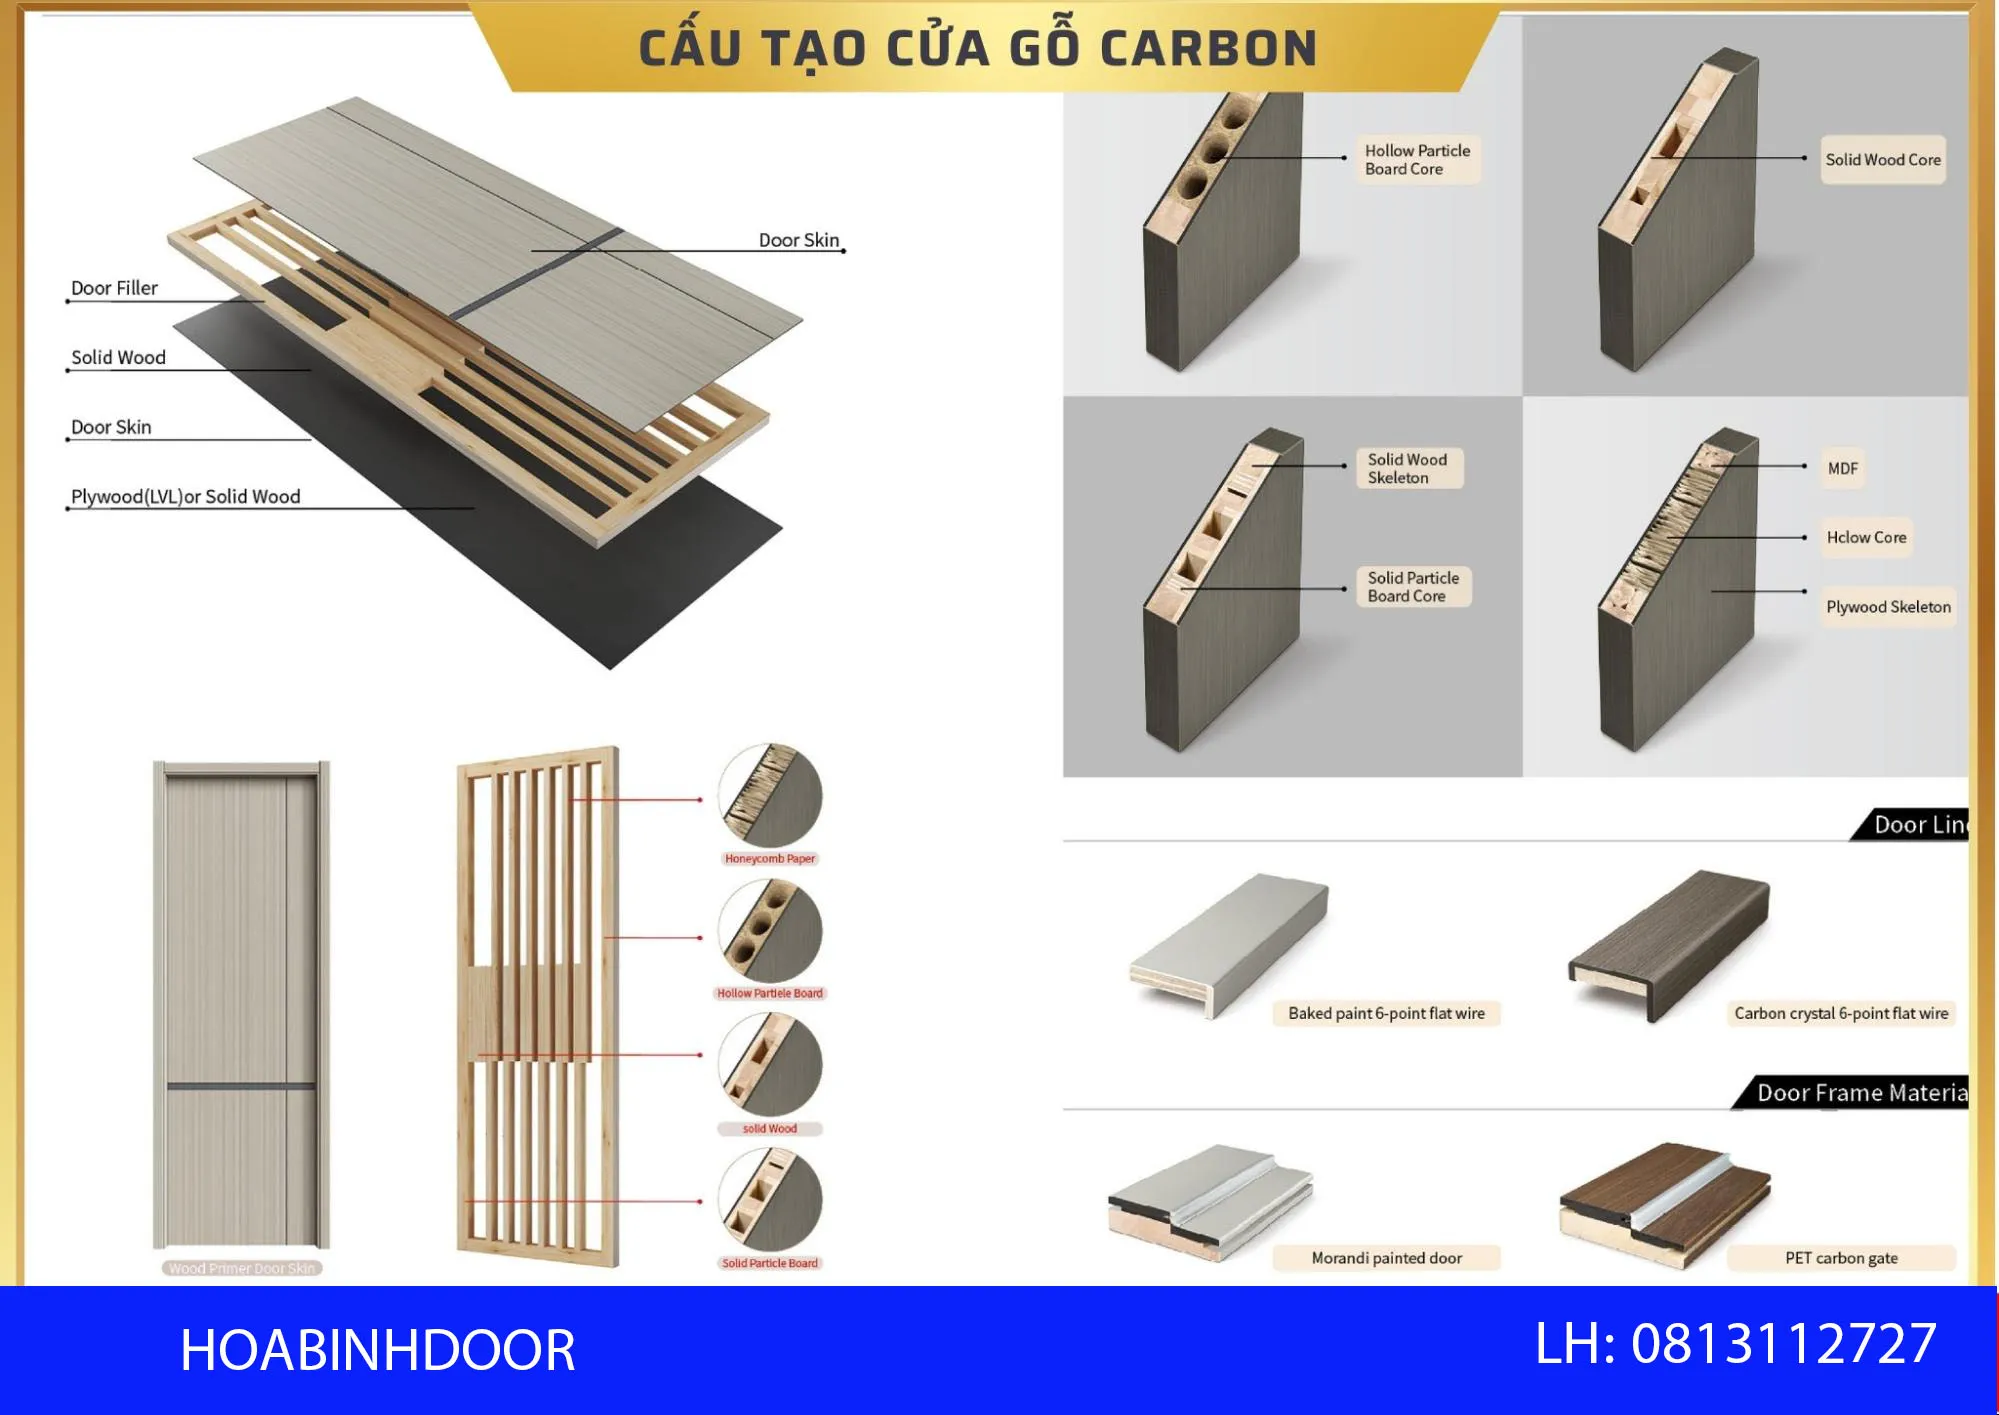 Cấu tạo cửa gỗ carbon mới nhất hiện này | Hoabinhdoor Cua-go-carbon-hoabinhdoor-2.jpg